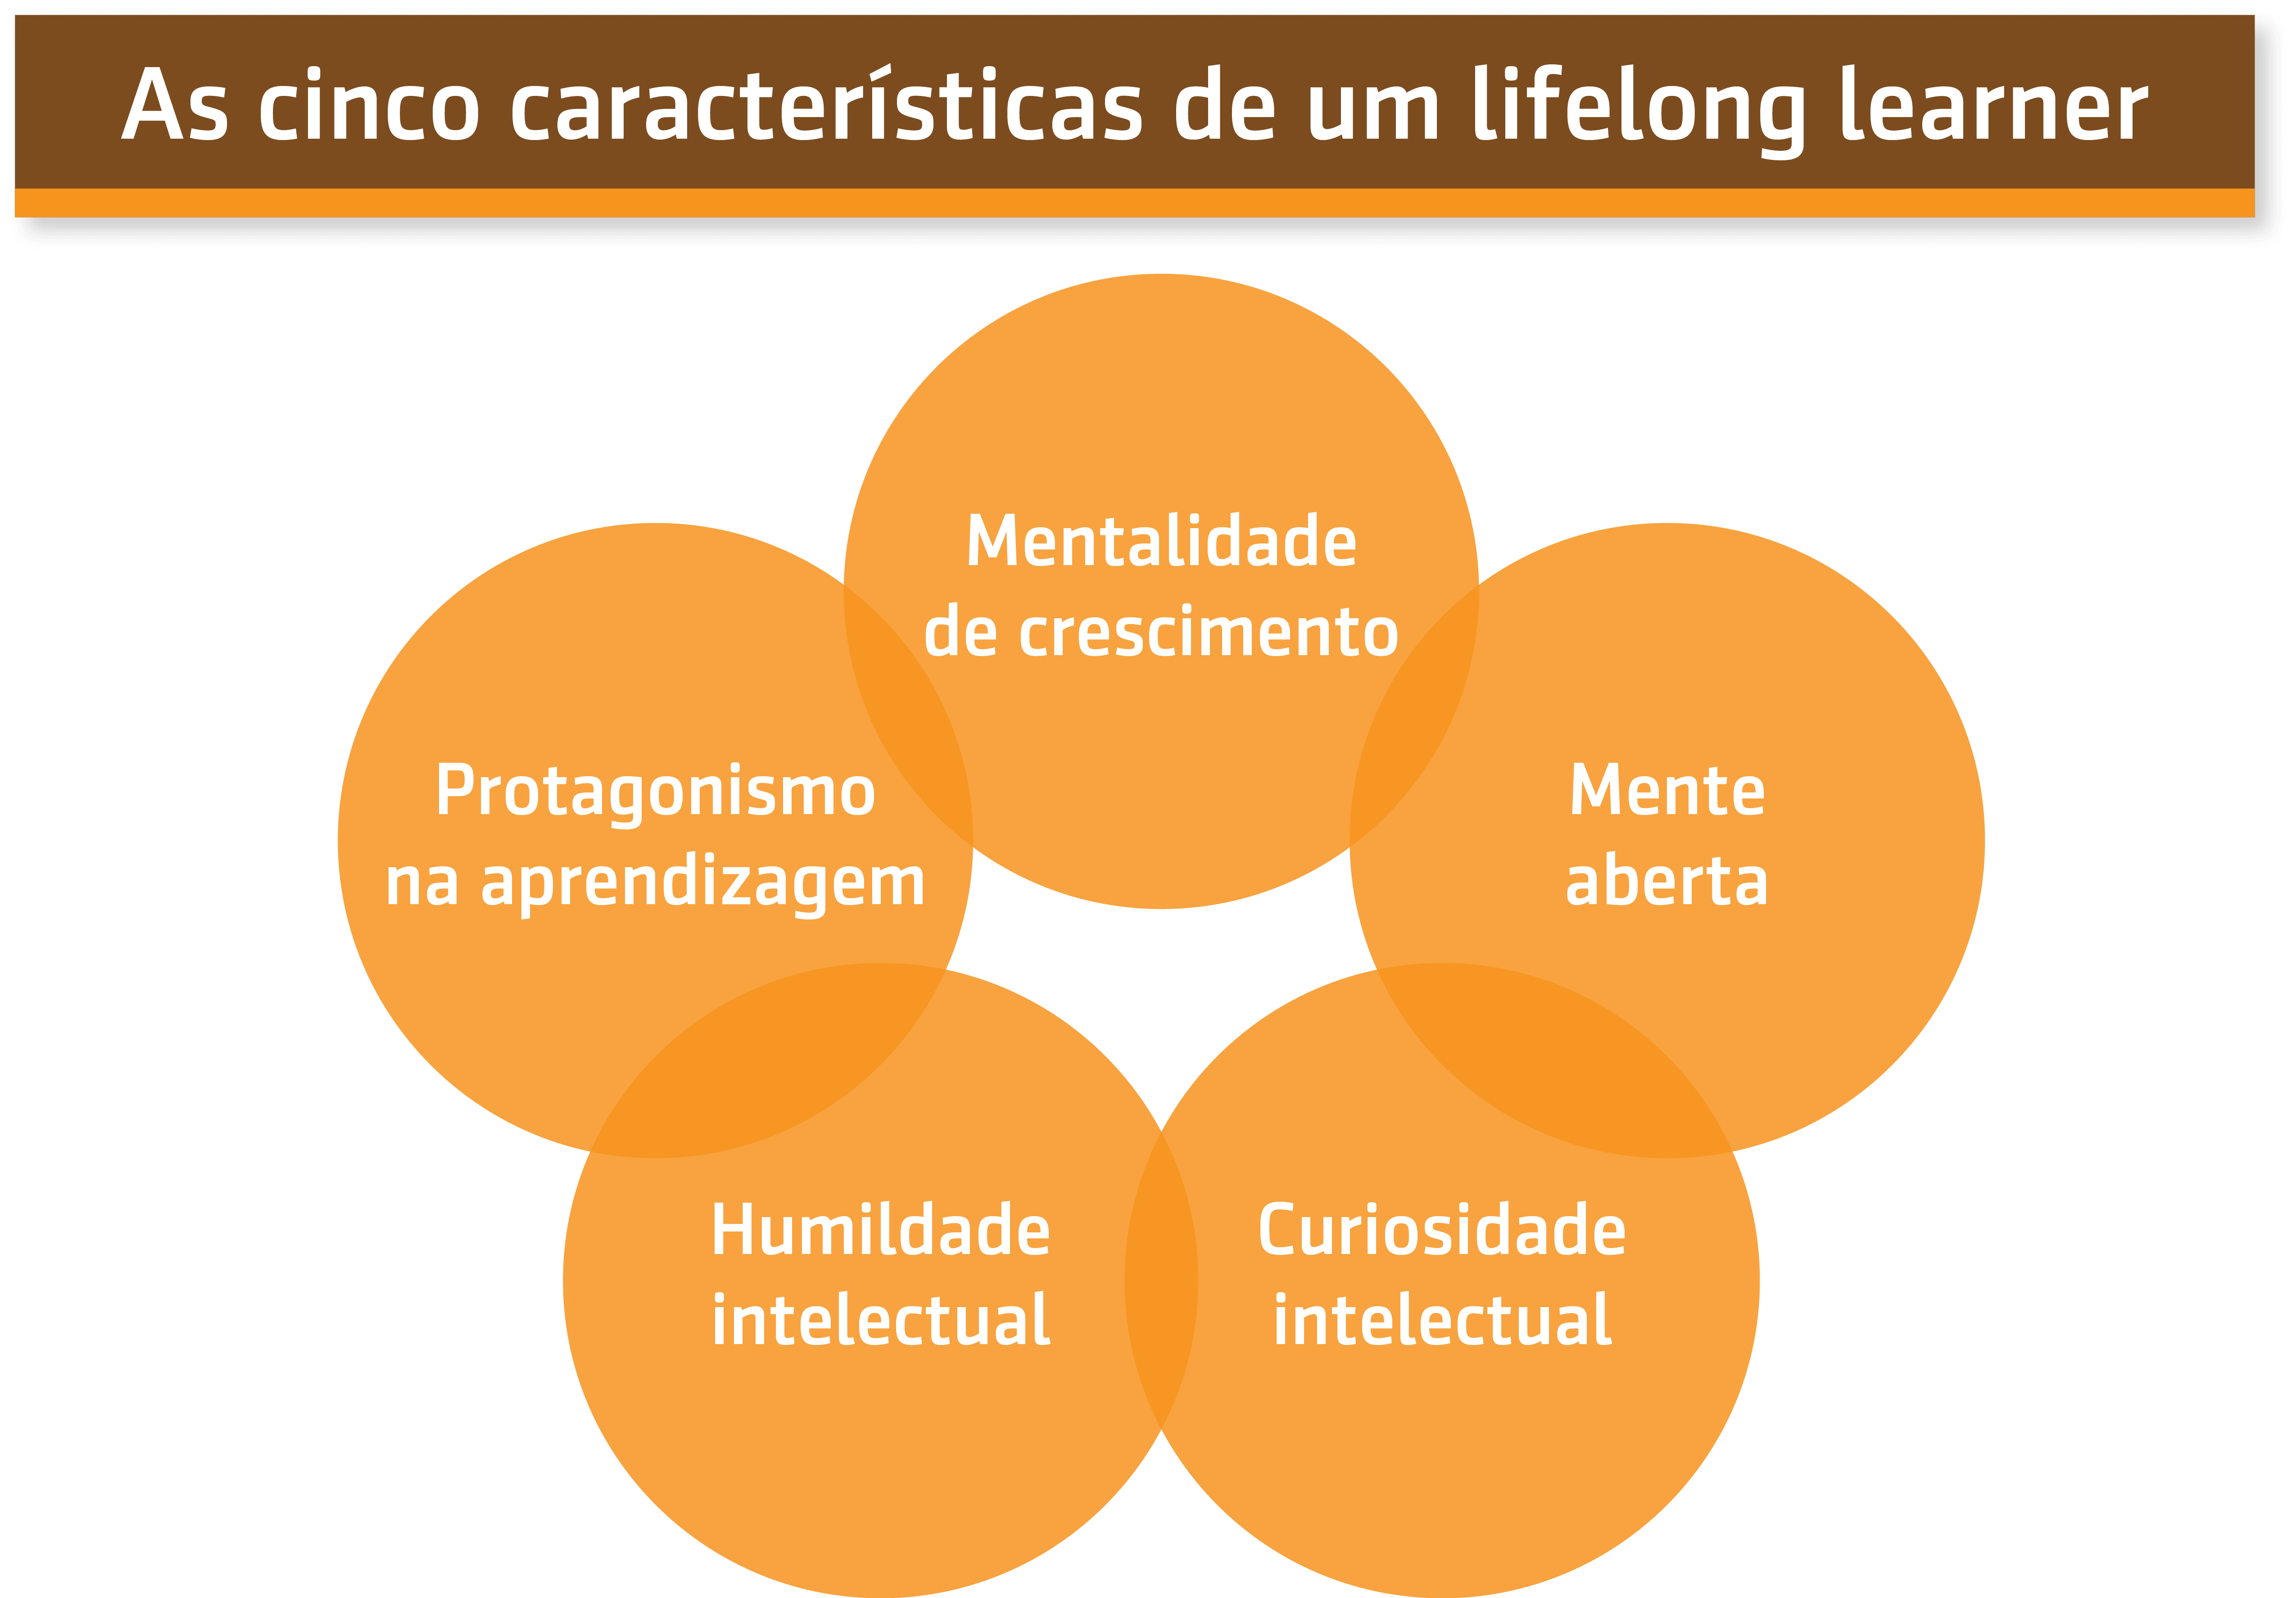 Resumo da aula sobre As cinco características de um lifelong learner do Prof. Wagner Cassimiro